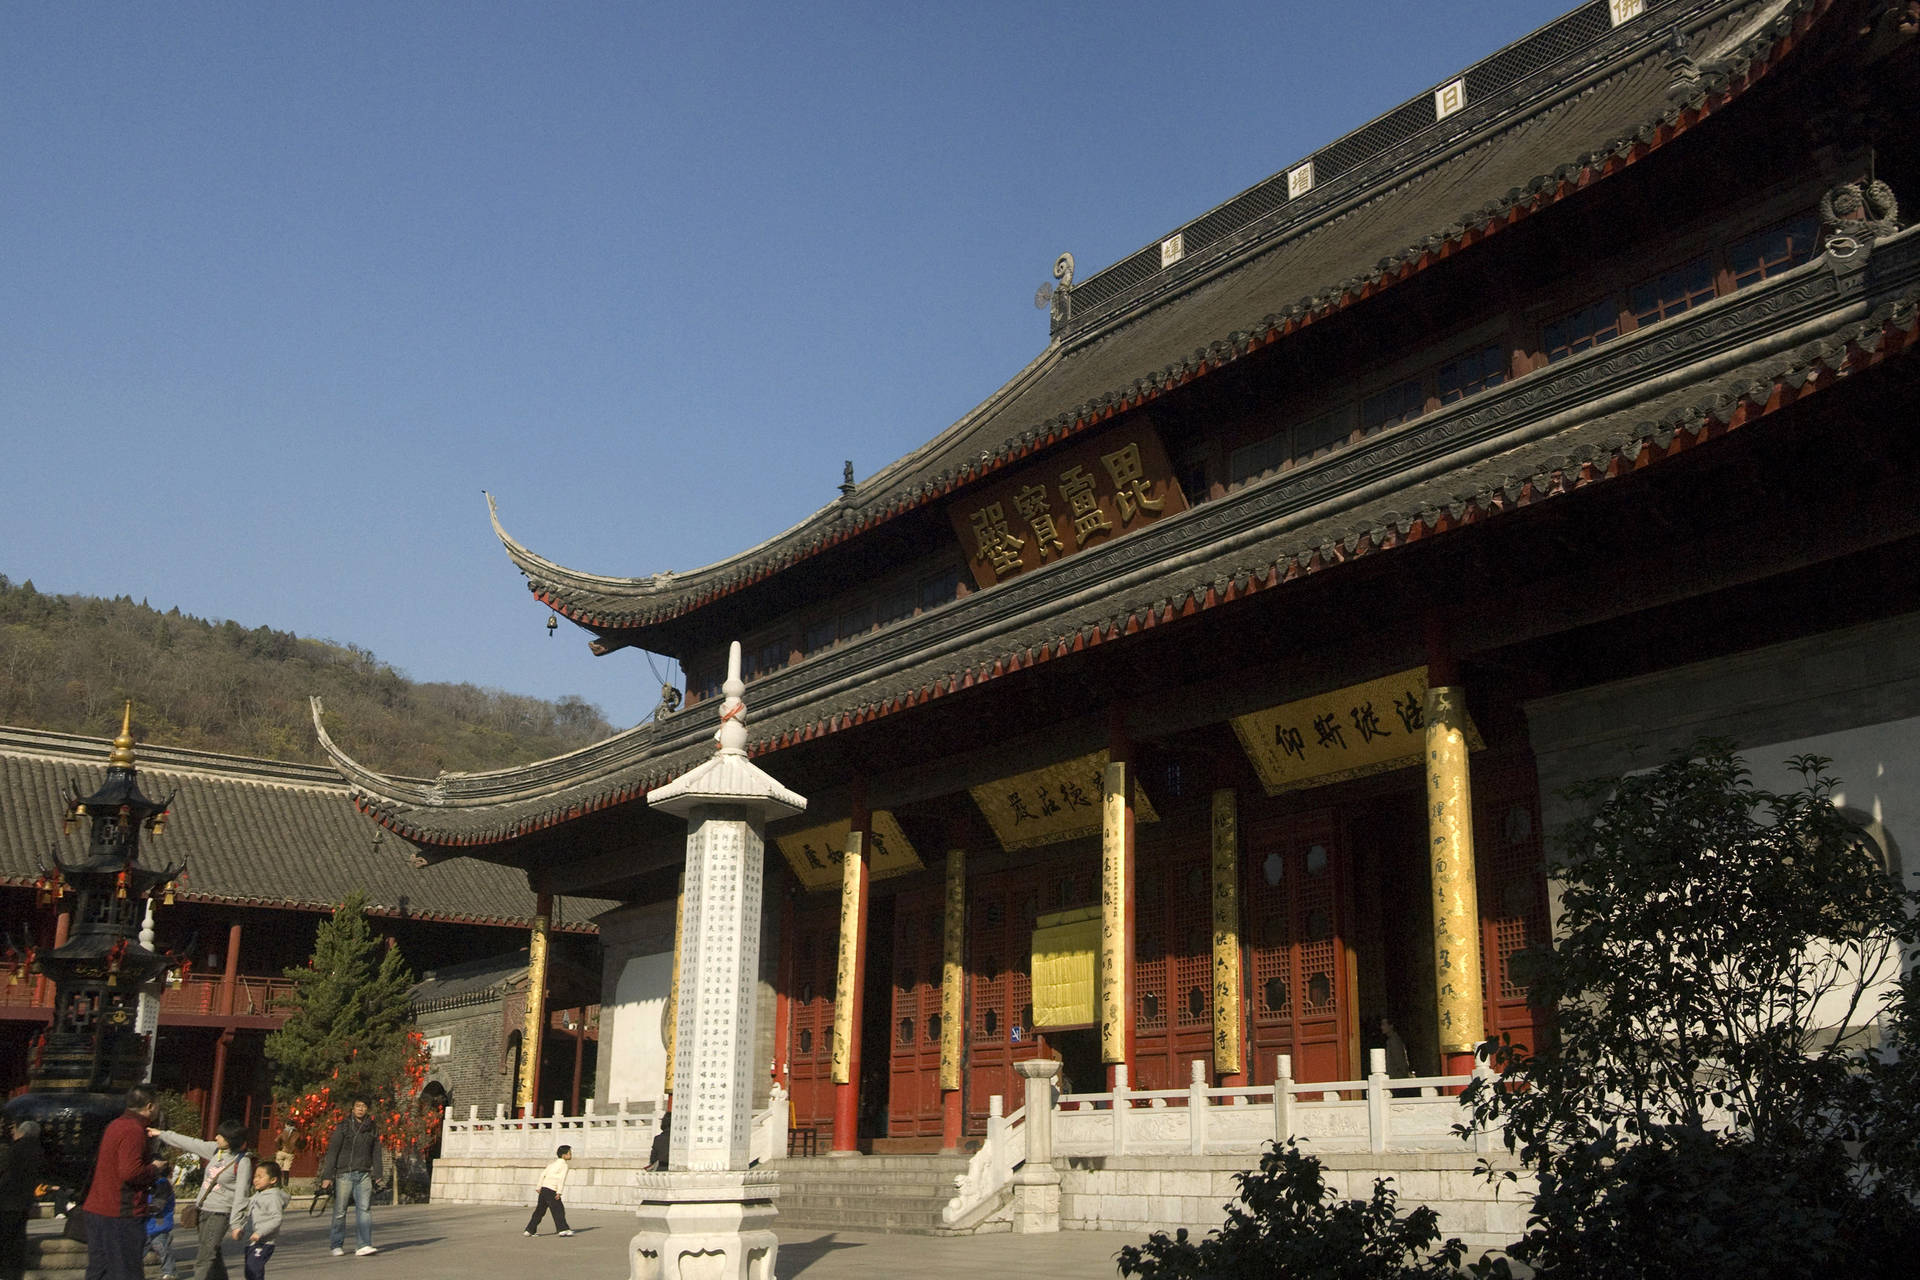 Nanjing Qixia Temple